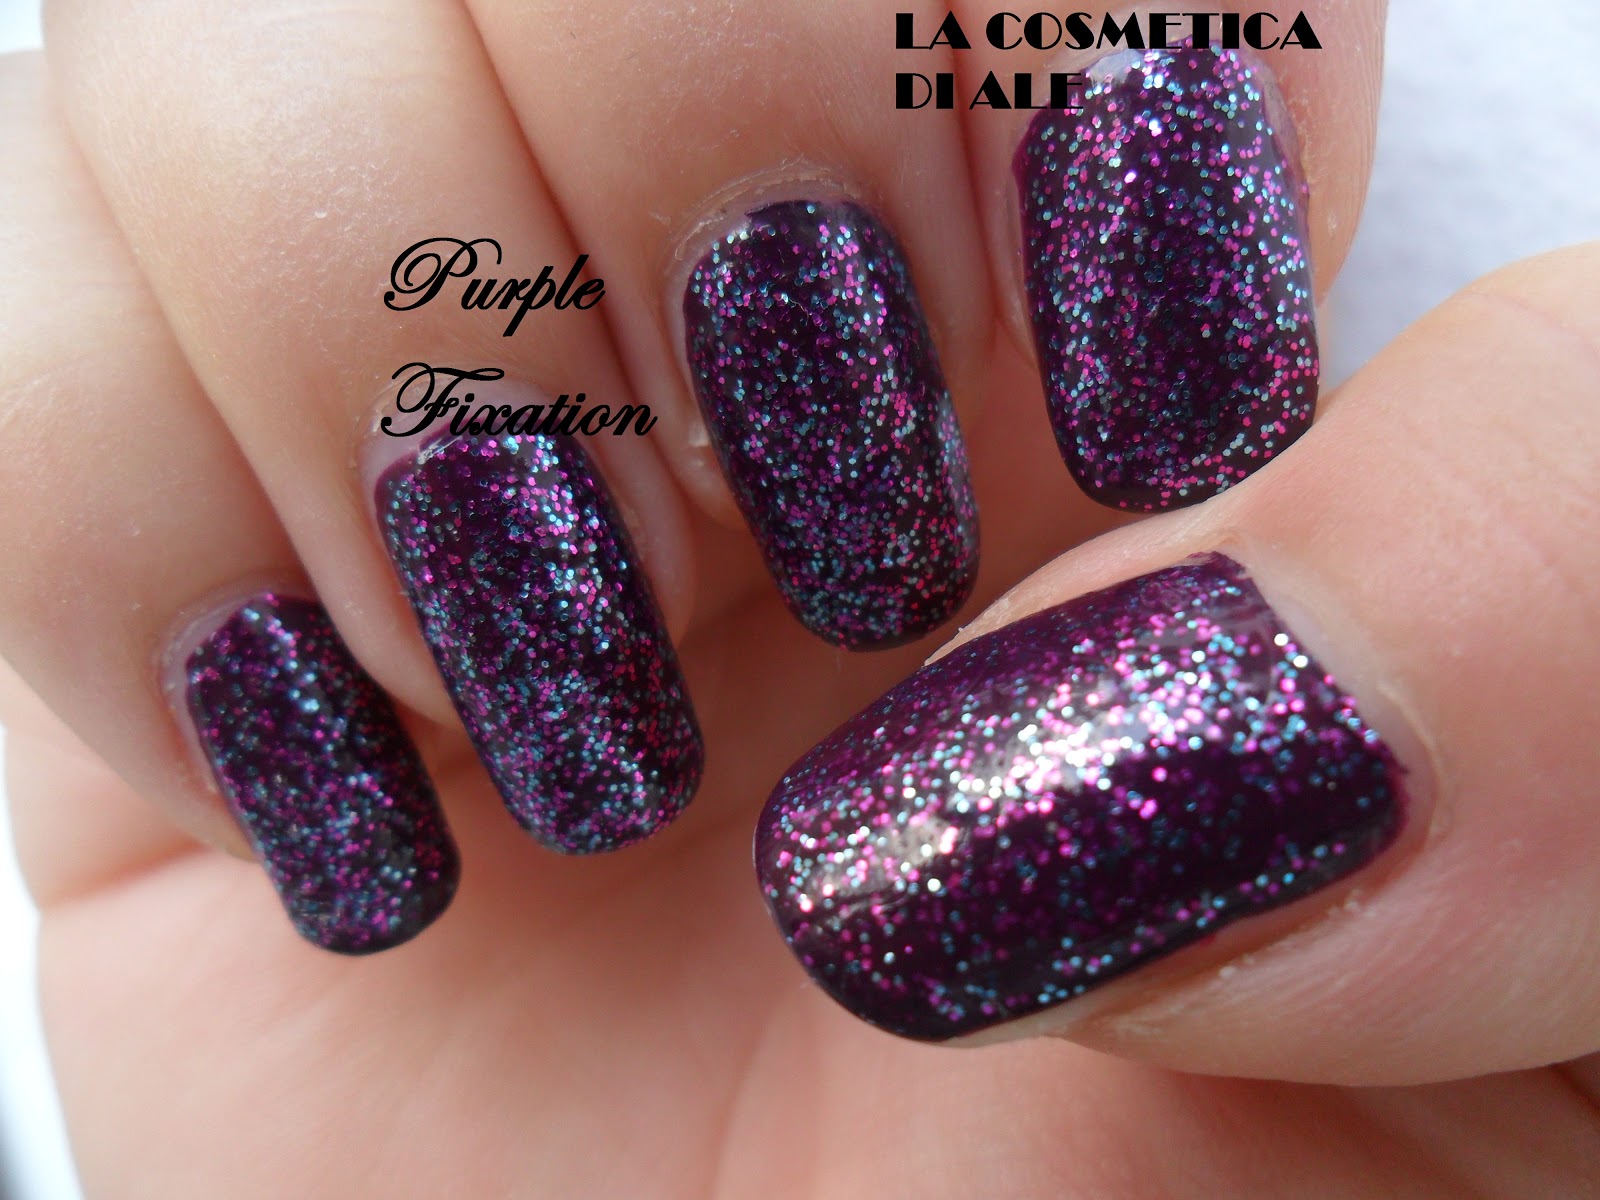 http://4.bp.blogspot.com/-4i0oah4CN2I/ULfQT6DWMeI/AAAAAAAACoo/_mpxOqJuxY0/s1600/unghie+purple.jpg